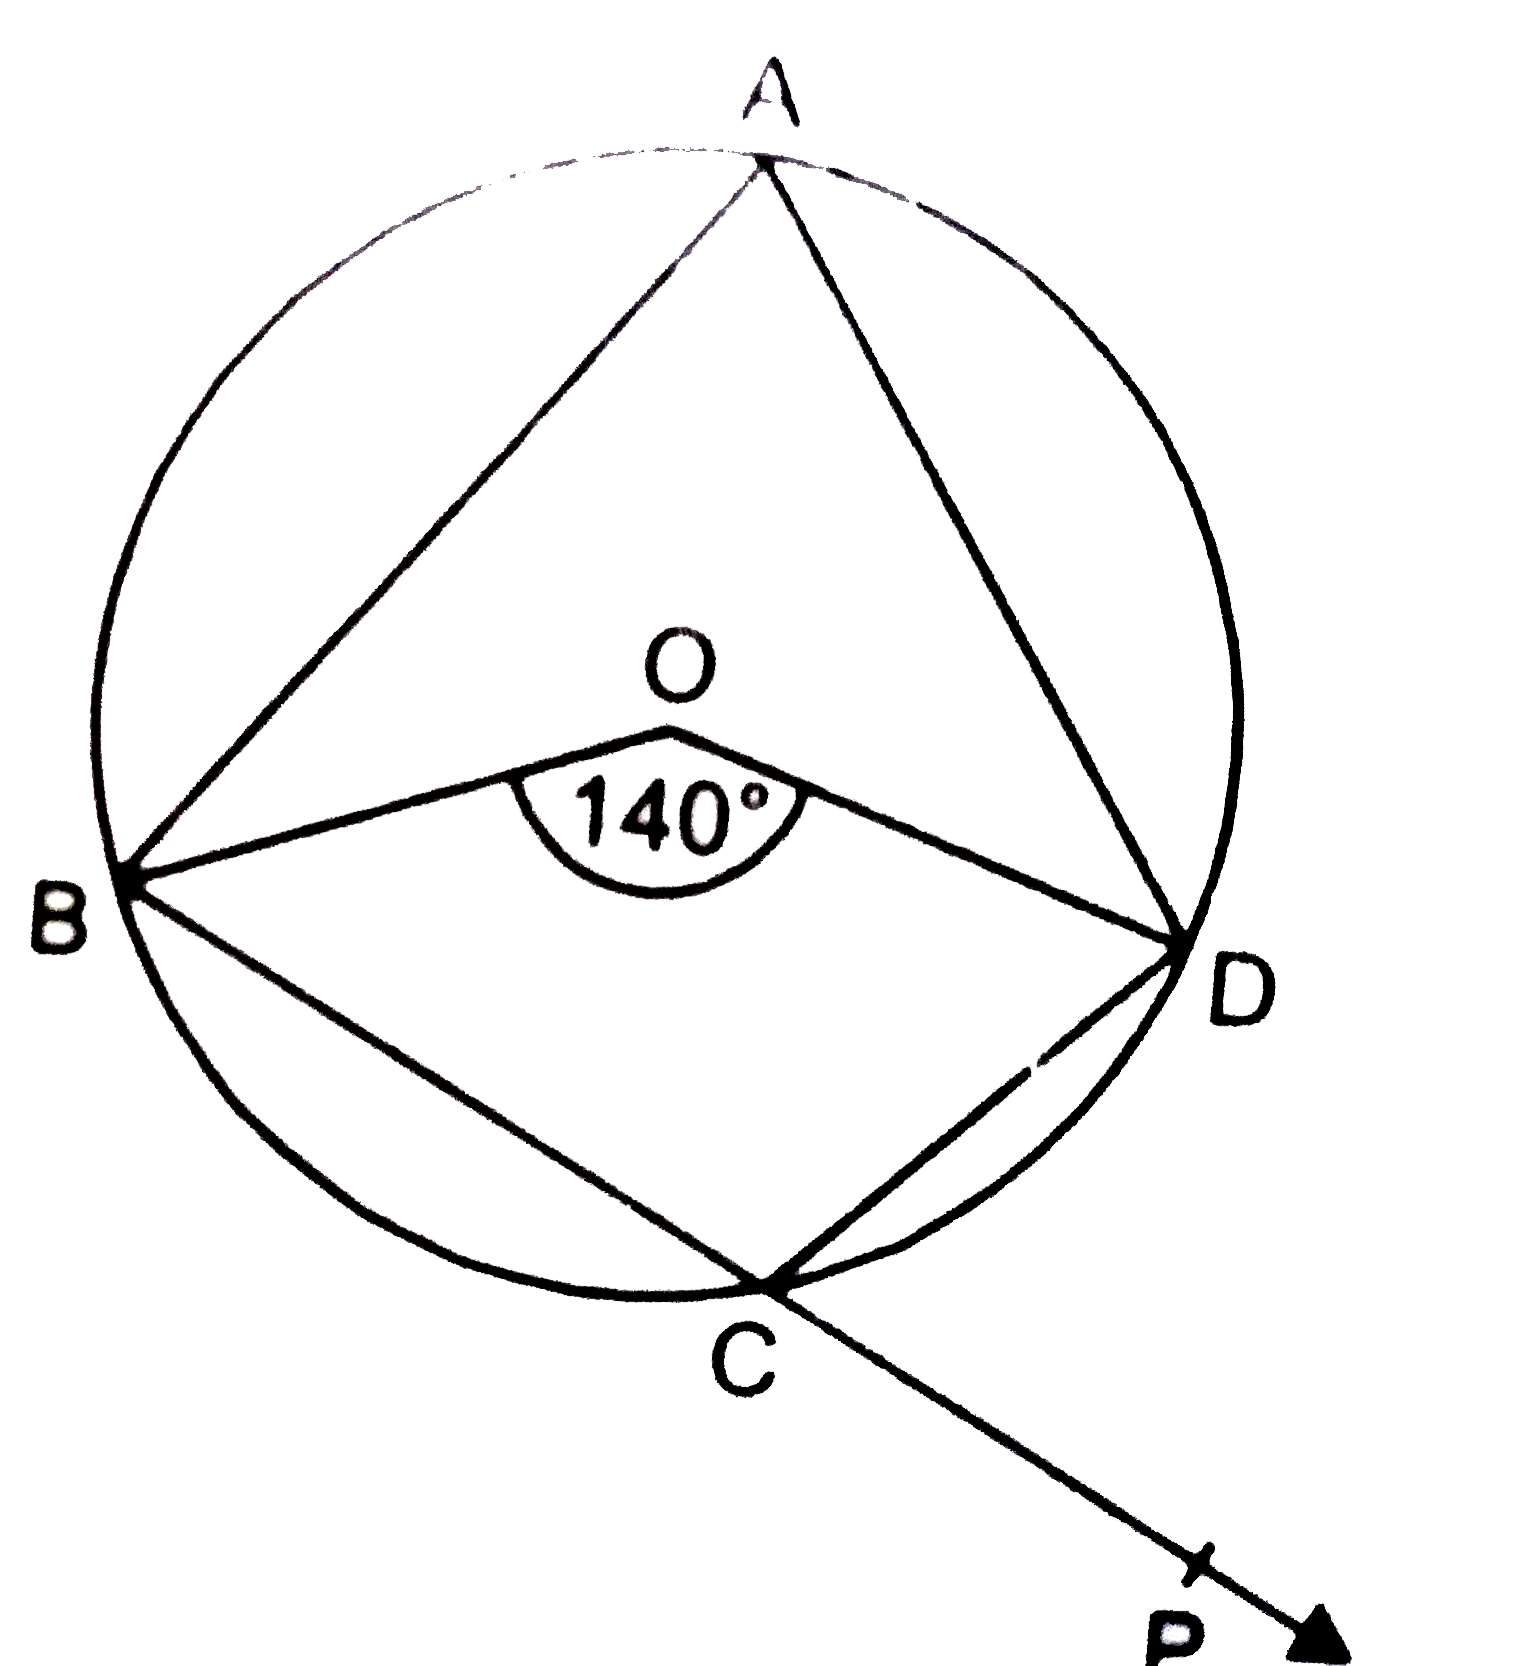 चित्र 8  में,   O वृत्त का केंद्र है  तथा चाप BCD  द्वारा केंद्र पर अंतरित कोण का मान  140^(@) है । BC  को बिंदु  P तक बढ़ाया गया है ।  angle DCP का मान  ज्ञात कीजिए ।